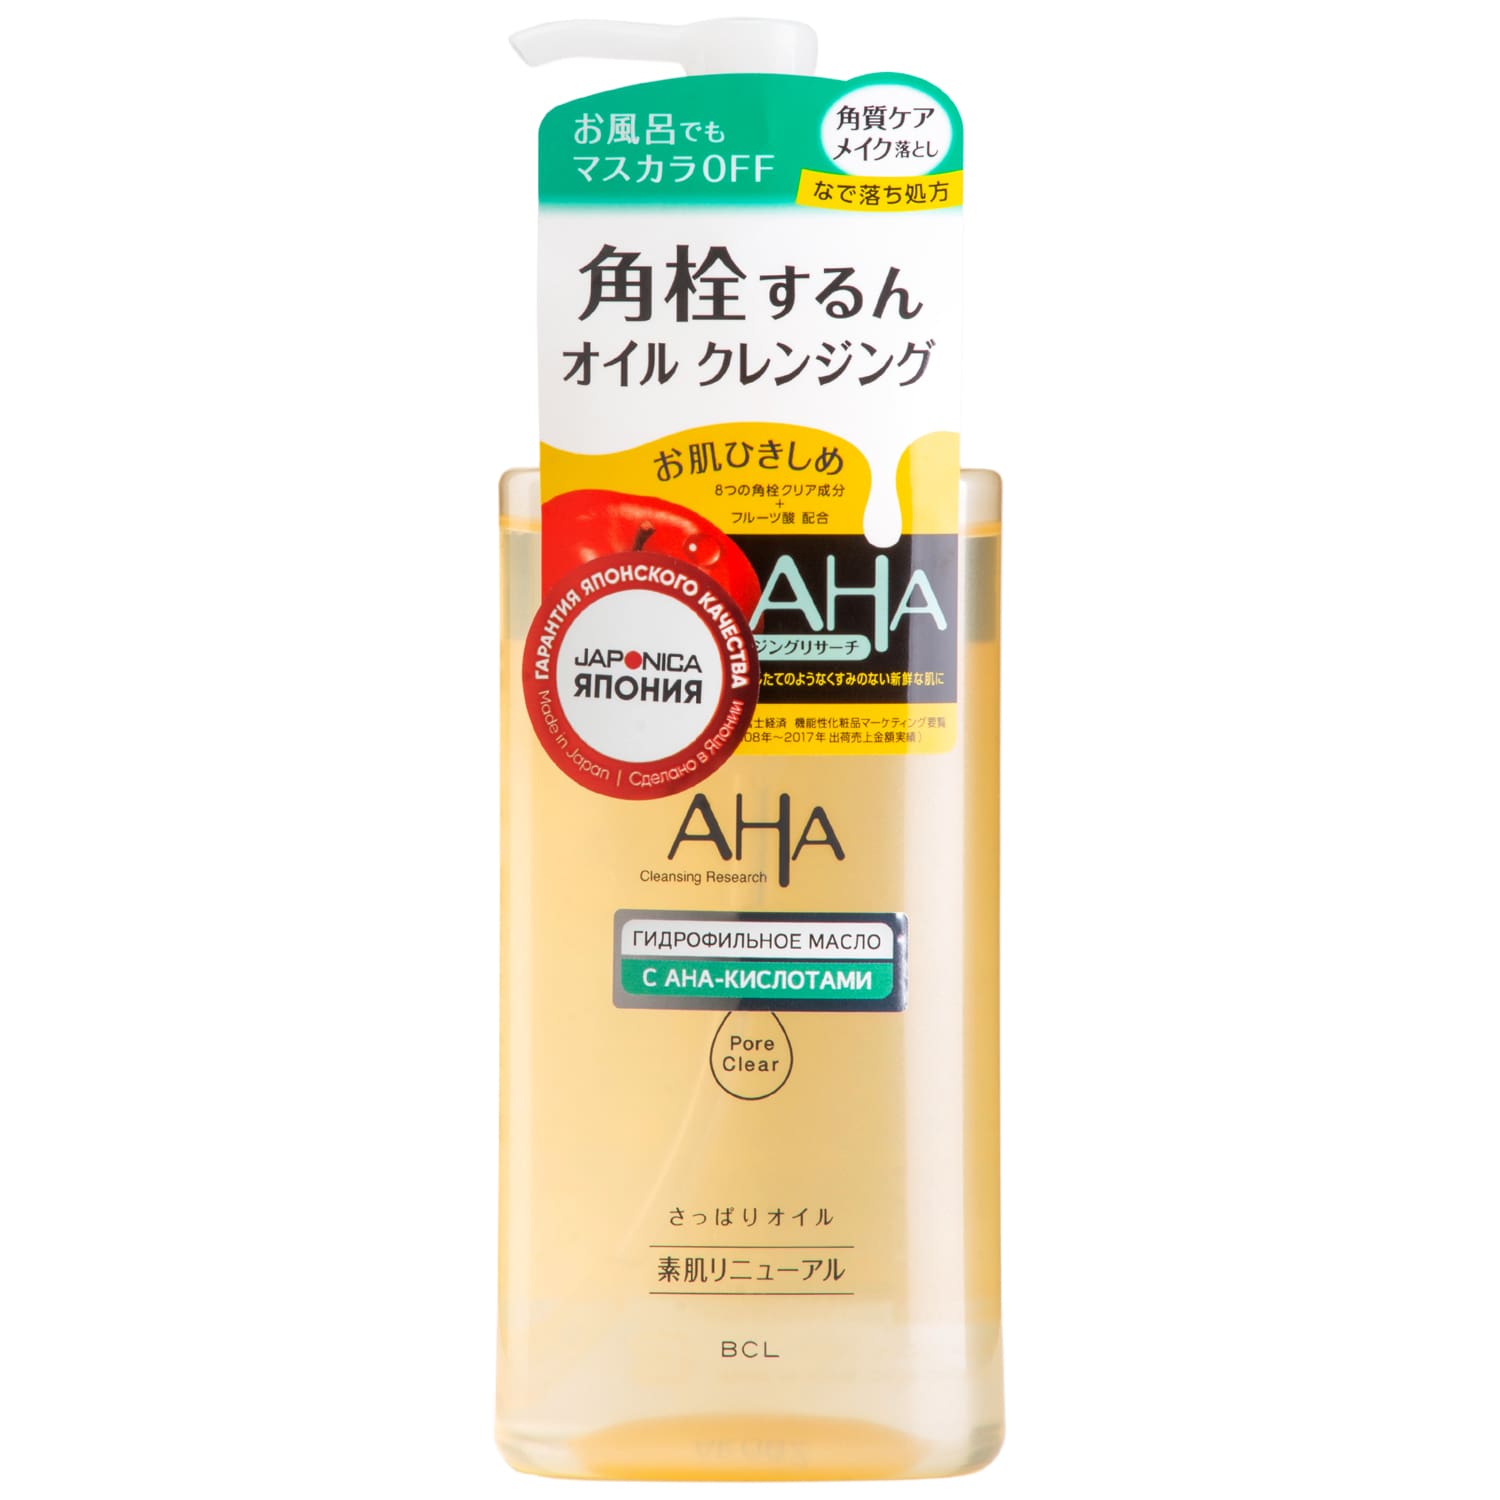 Aha Гидрофильное масло для снятия макияжа с фруктовыми кислотами для нормальной и комбинированной кожи, 200 мл (Aha, Basic)